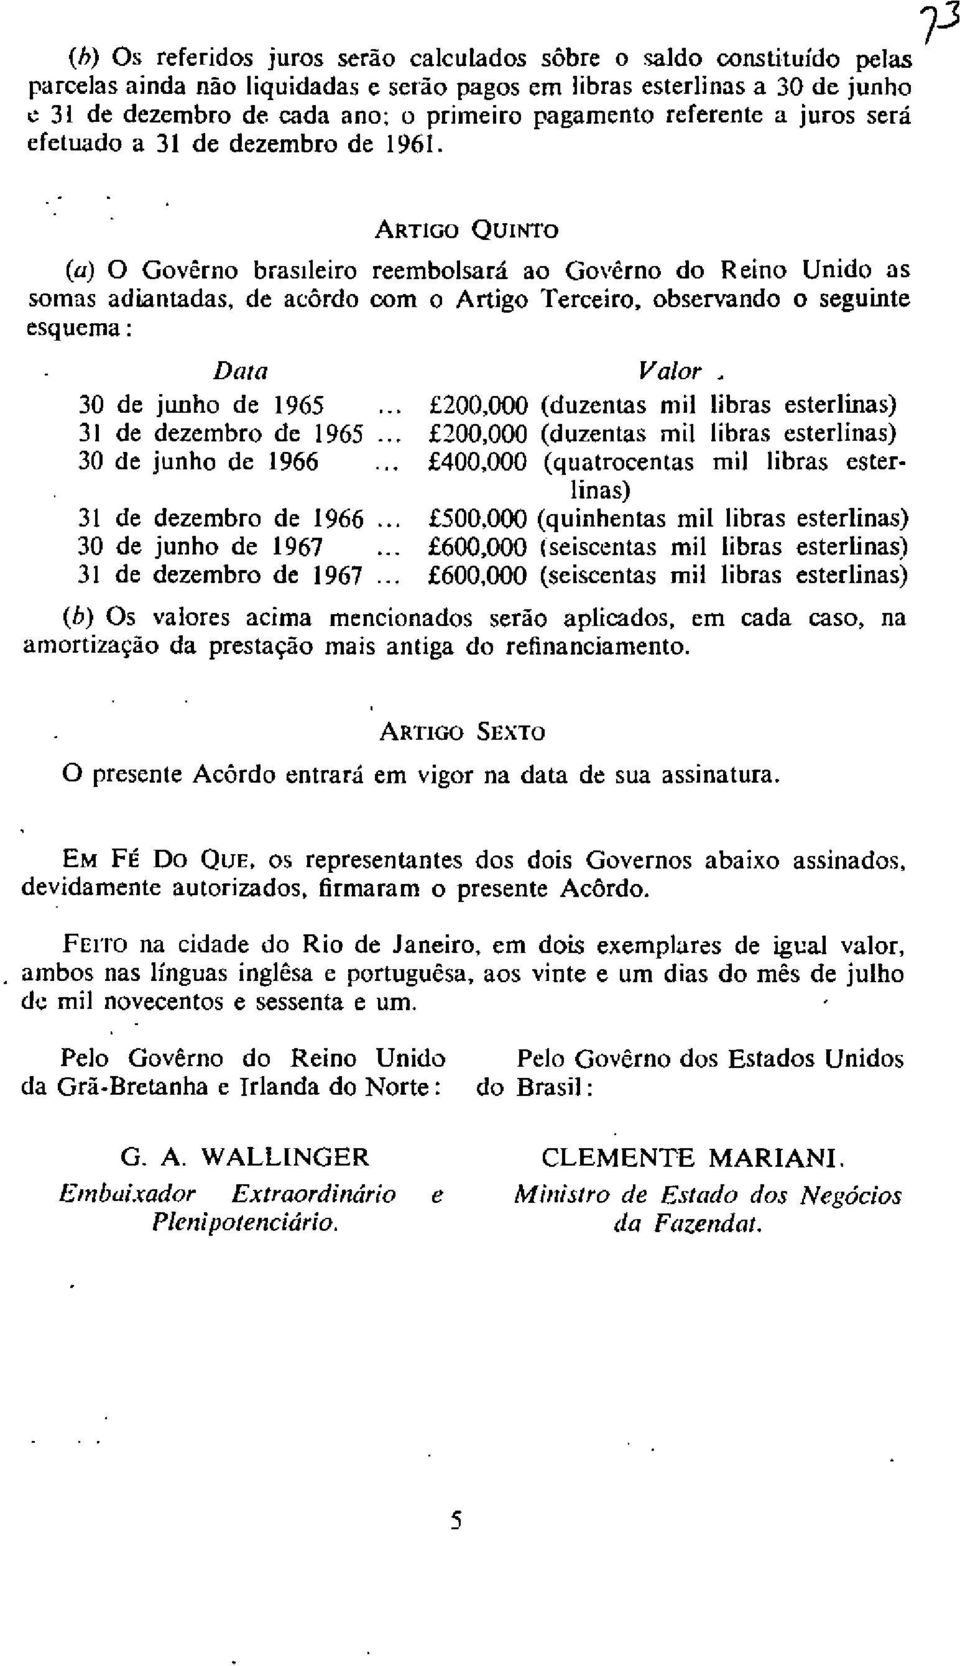 73 ARTIGO QUINTO (a) 0 Governo brasileiro reembolsara ao Governo do Reino Unido as somas adiantadas, de acordo corn o Artigo Terceiro, observando o seguinte esquema: Data 30 de junho de 1965.